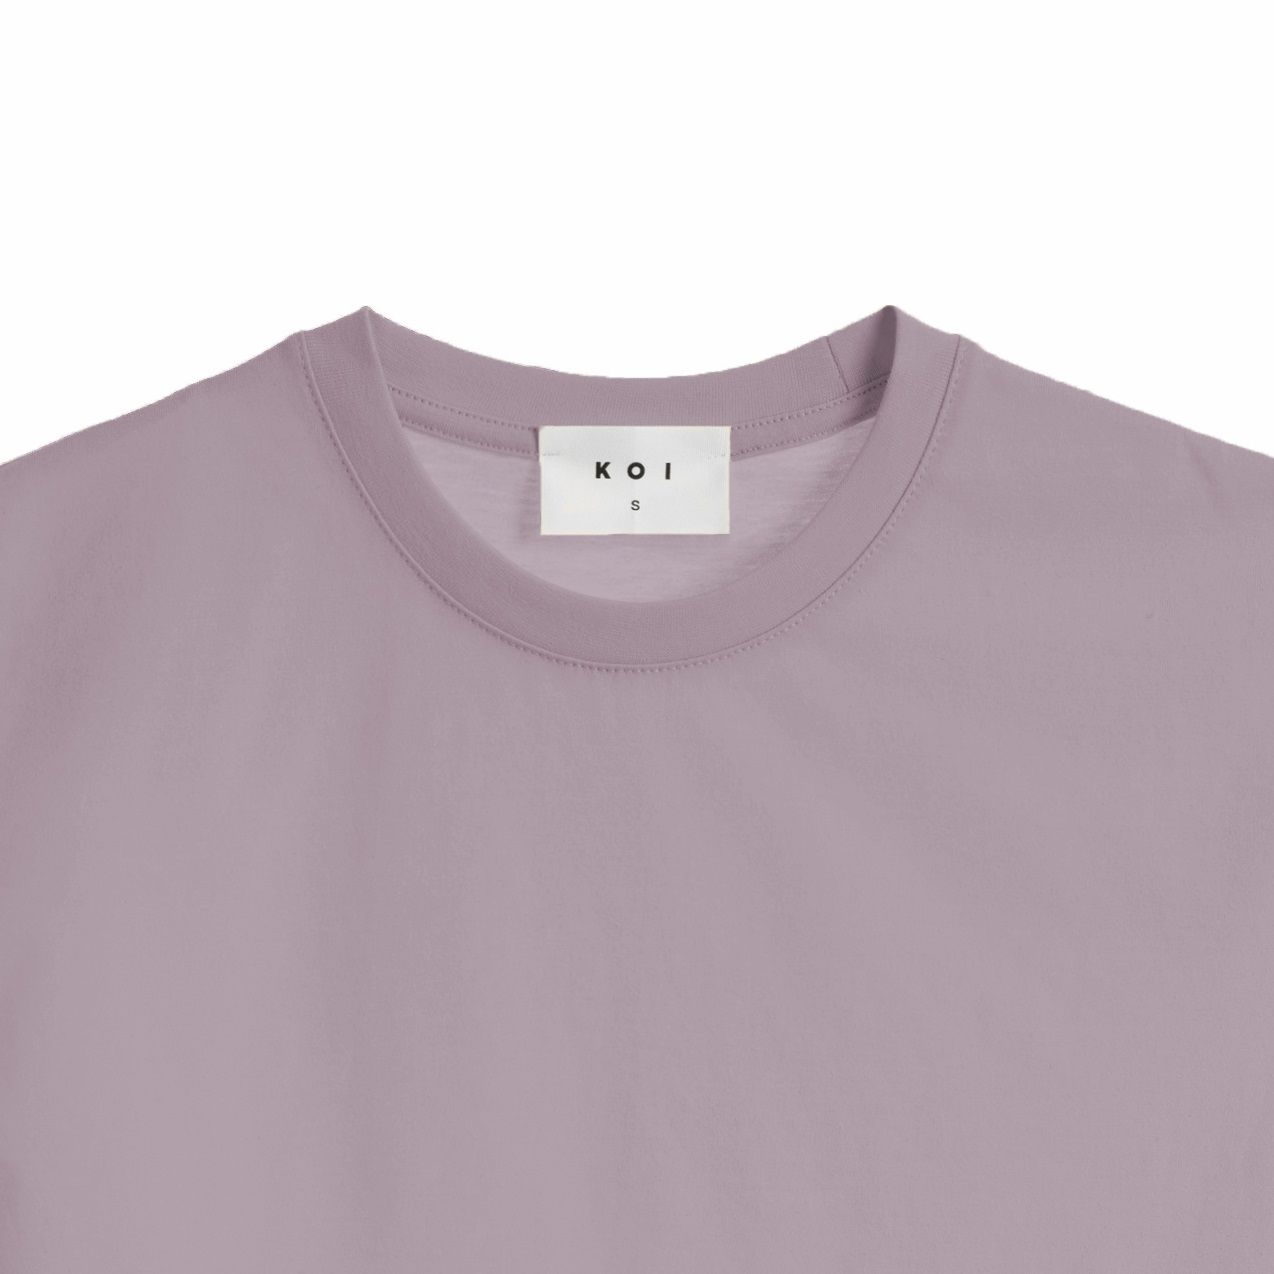 تی شرت آستین کوتاه زنانه کوی مدل رگولار هی گرل کد 444 رنگ بنفش -  - 2